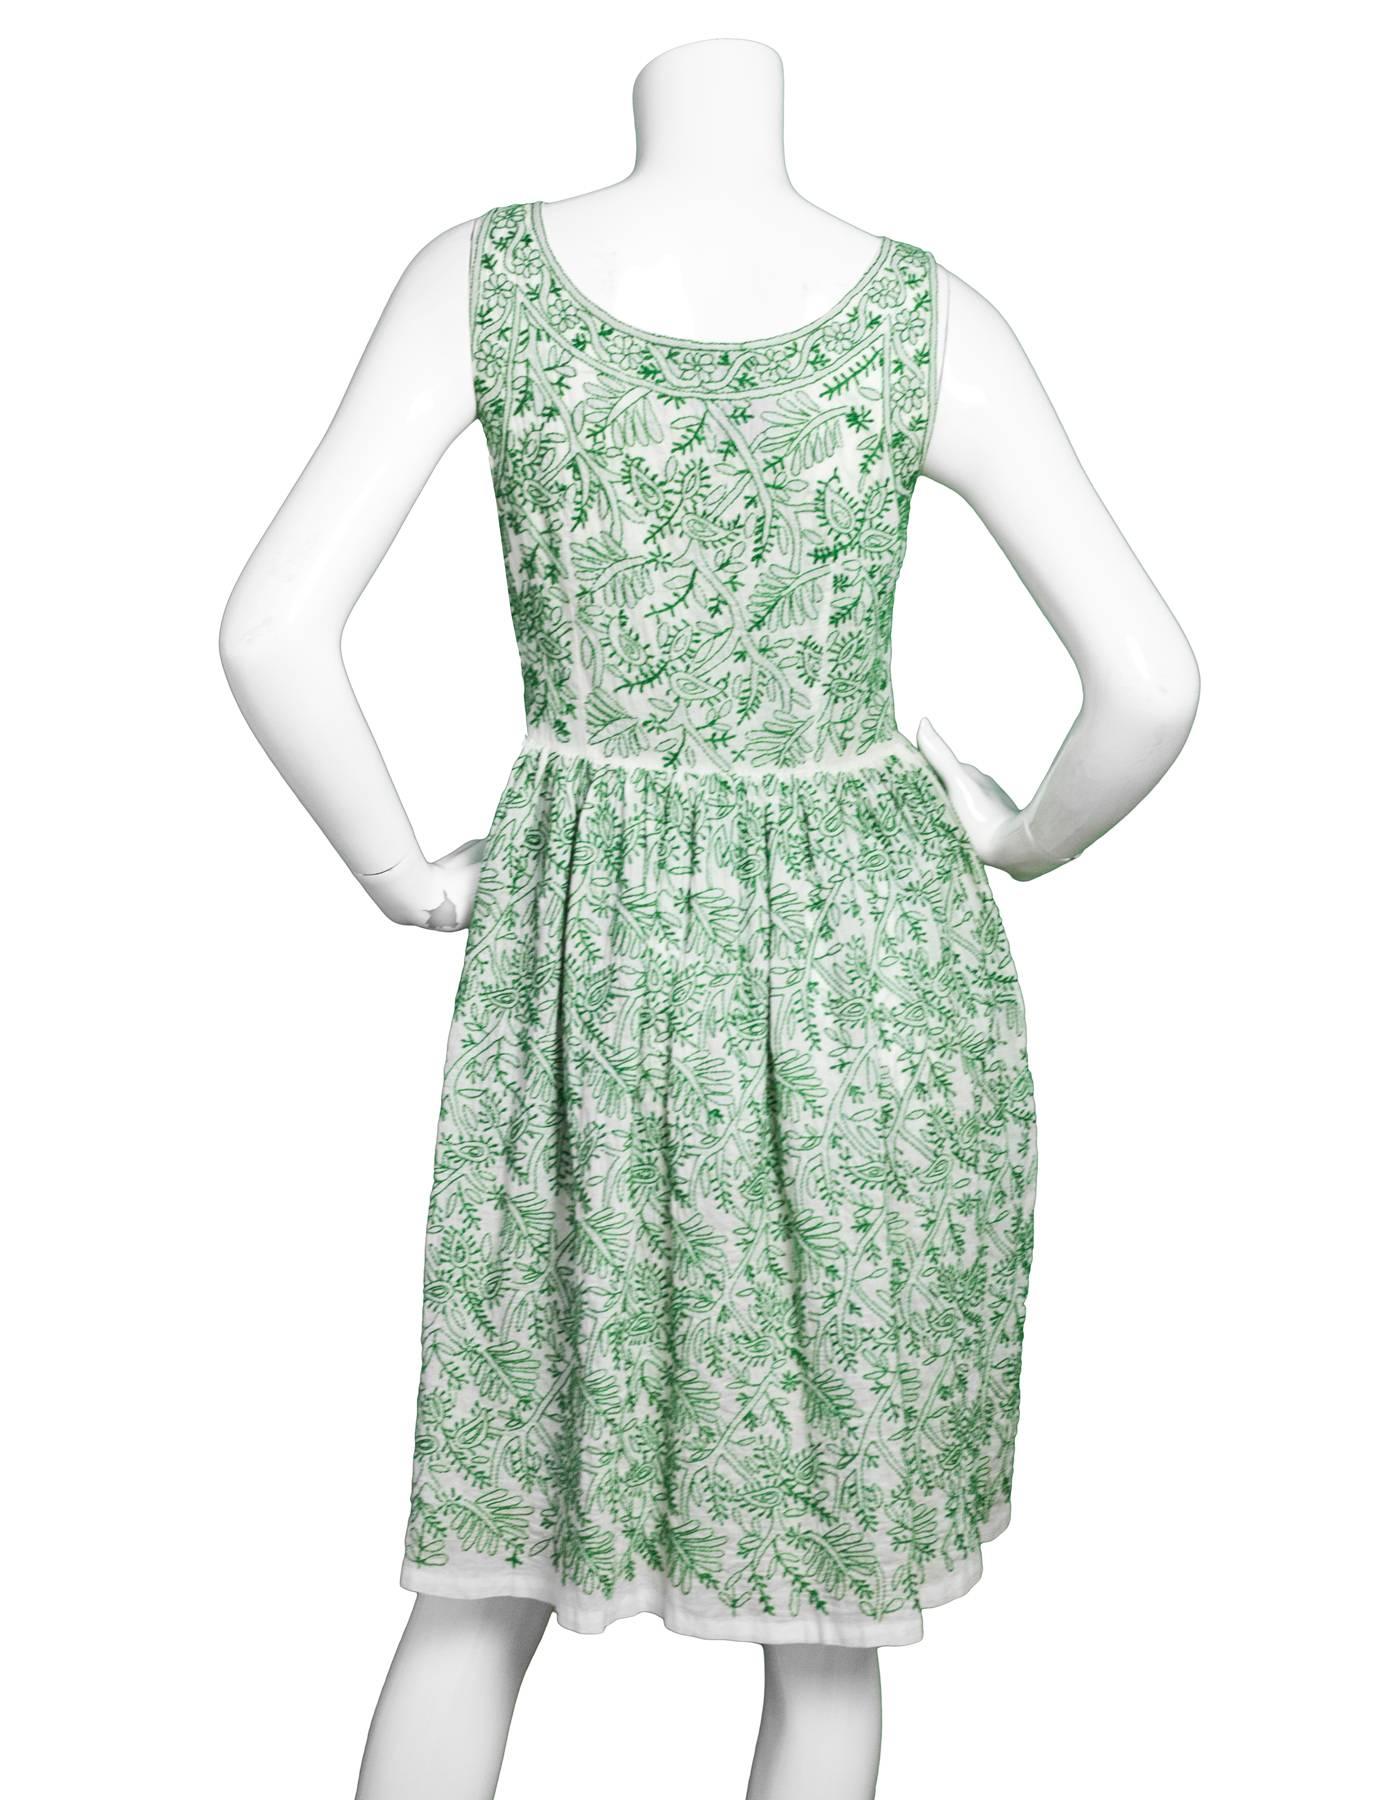 Blue Prada White & Green Embroidered Cotton Sleeveless Dress sz S